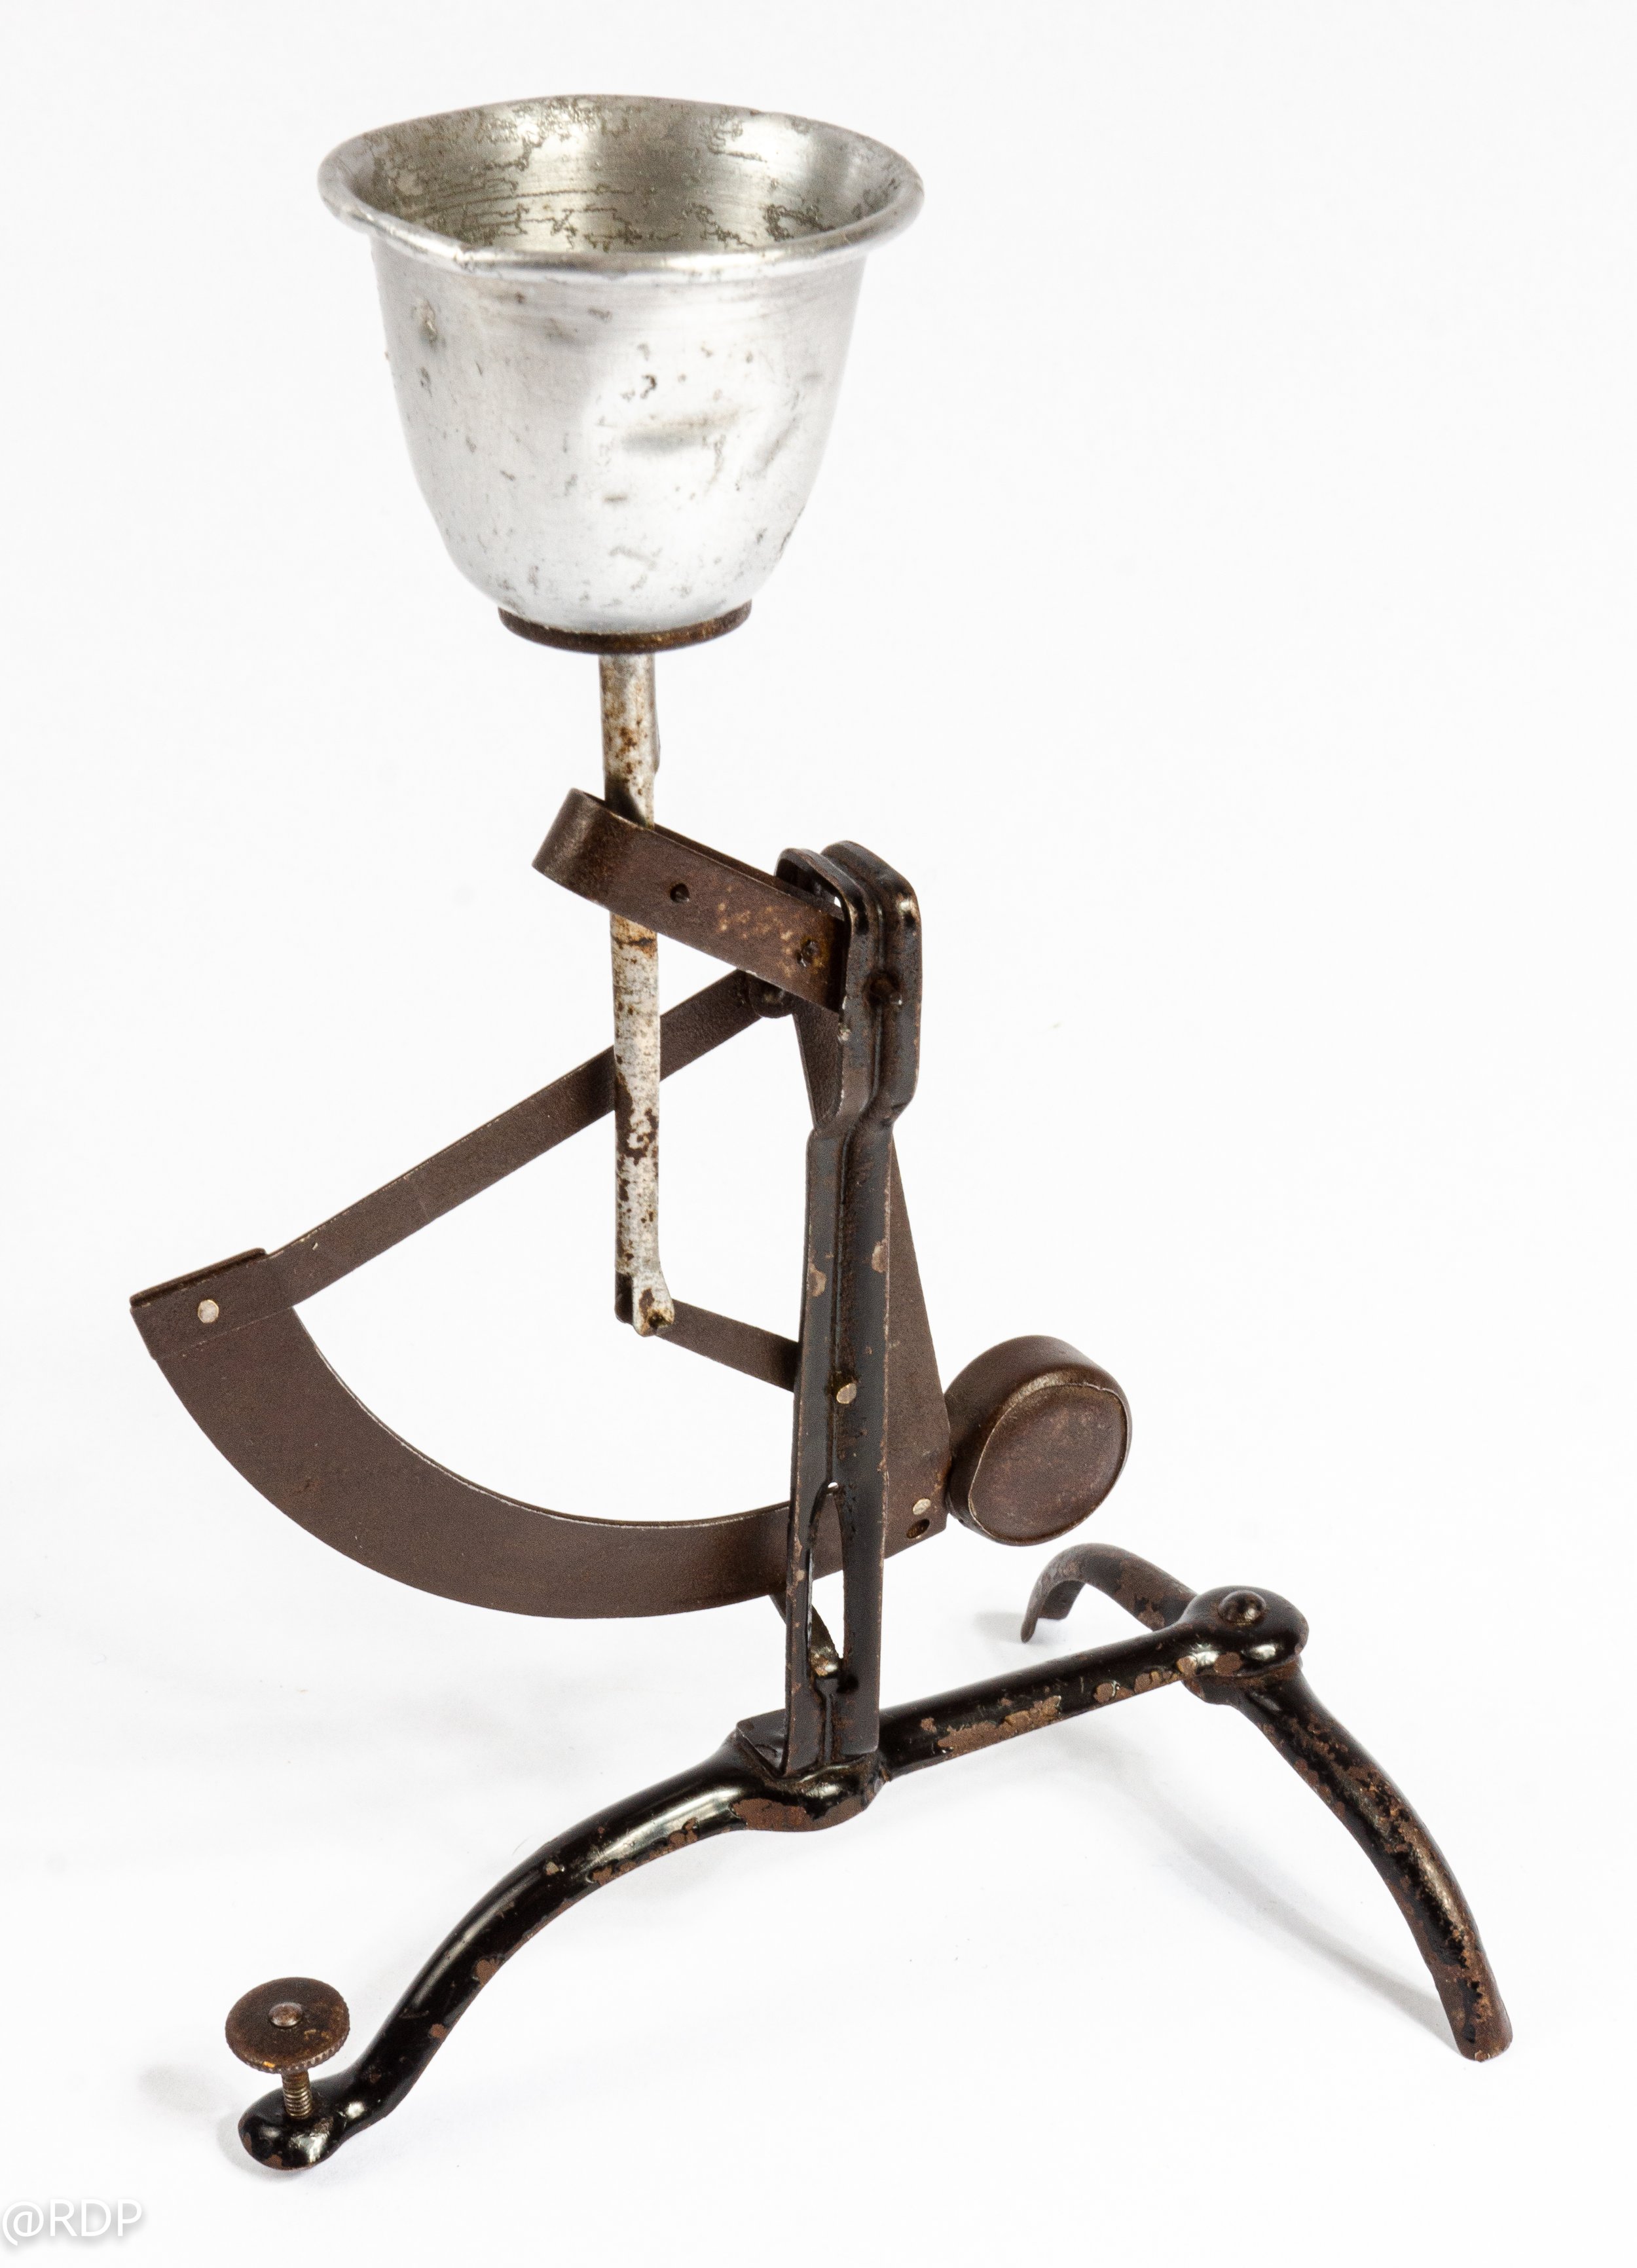 Pendulum Egg Scale — Robert's collection of antique scientific